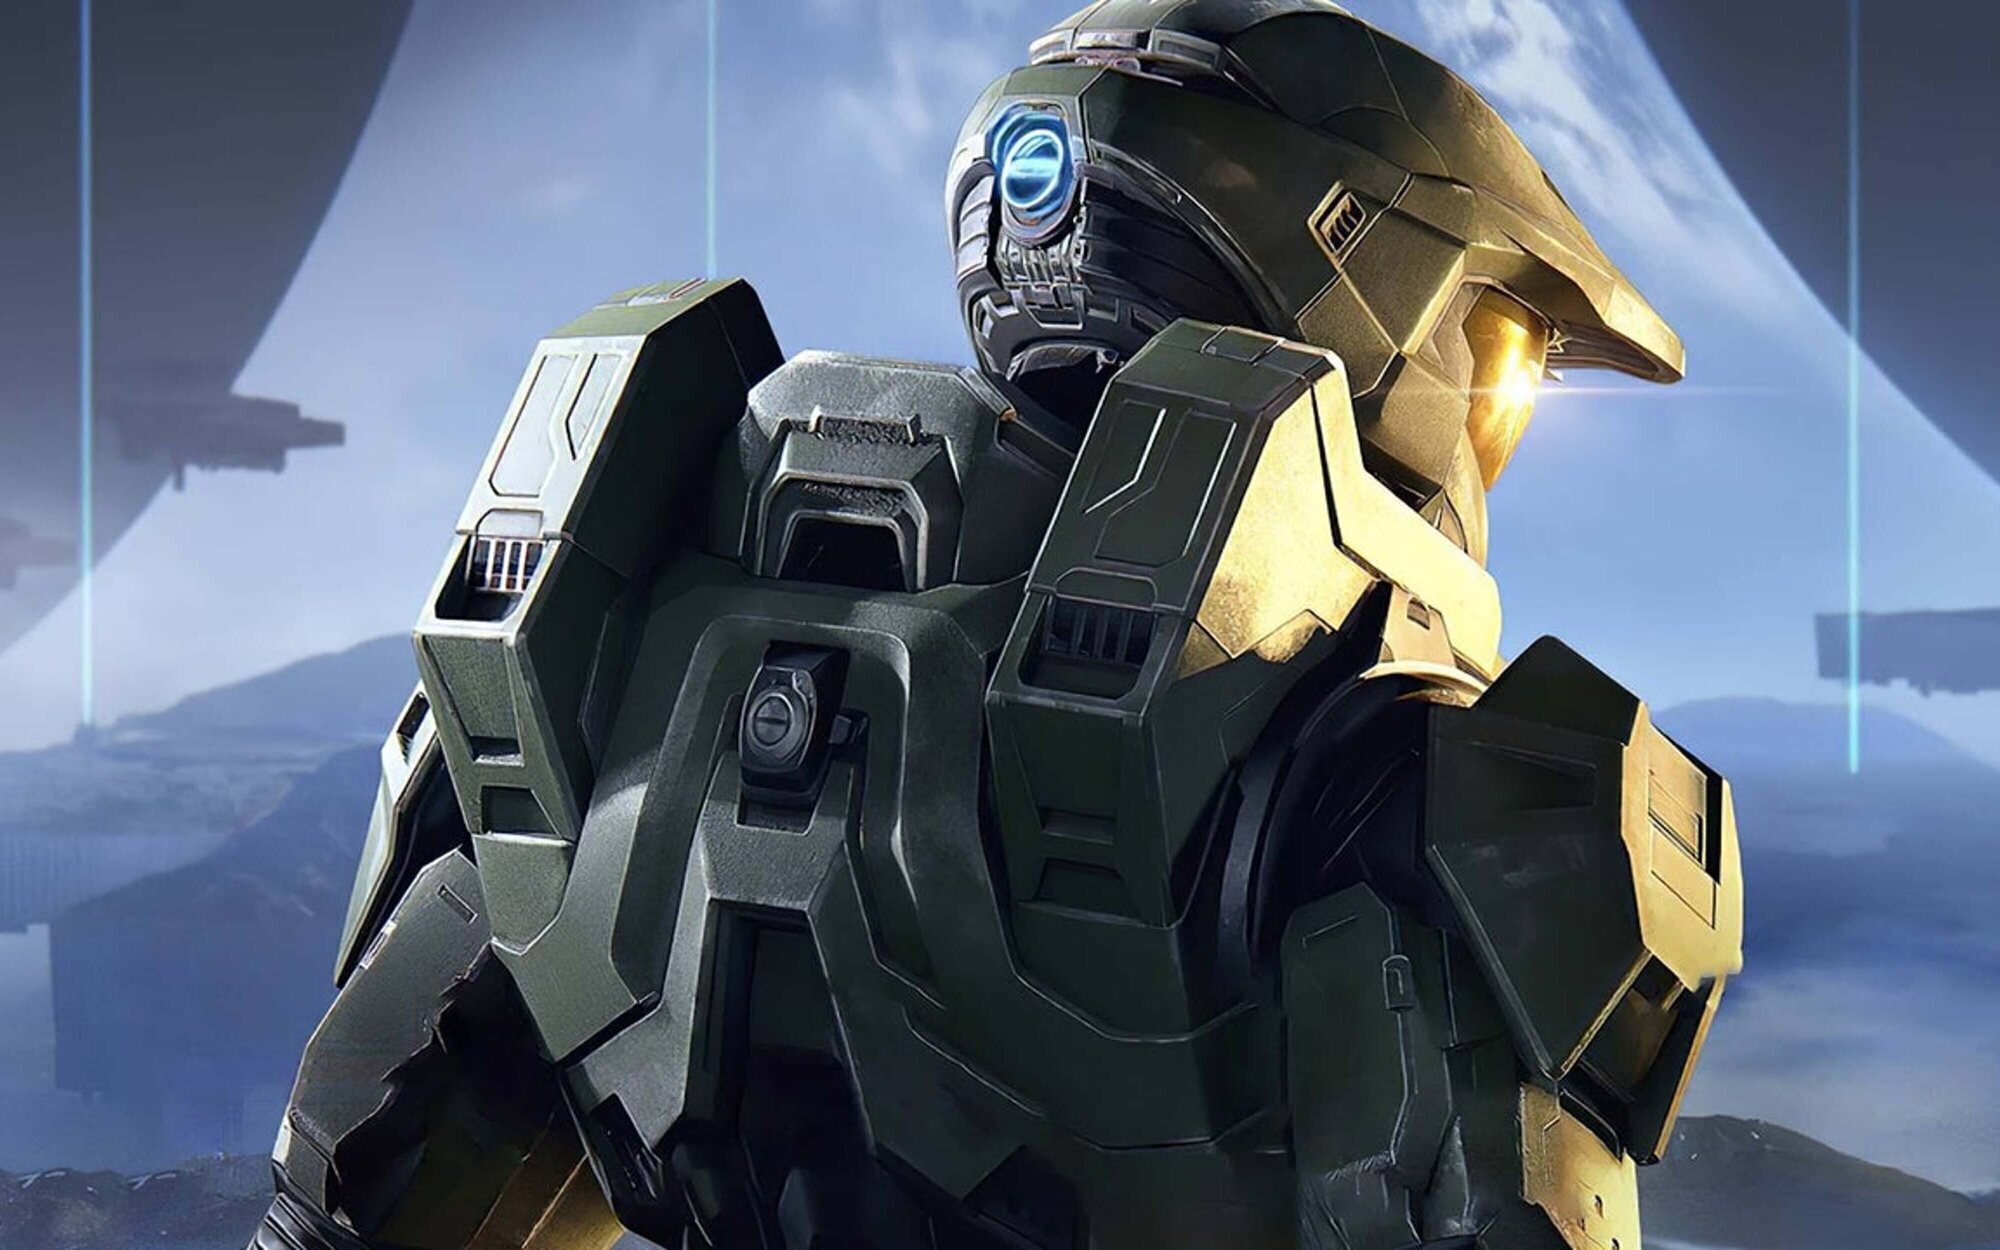 Los próximos juegos de la saga 'Halo' podrían ser desarrollados con el motor Unreal Engine